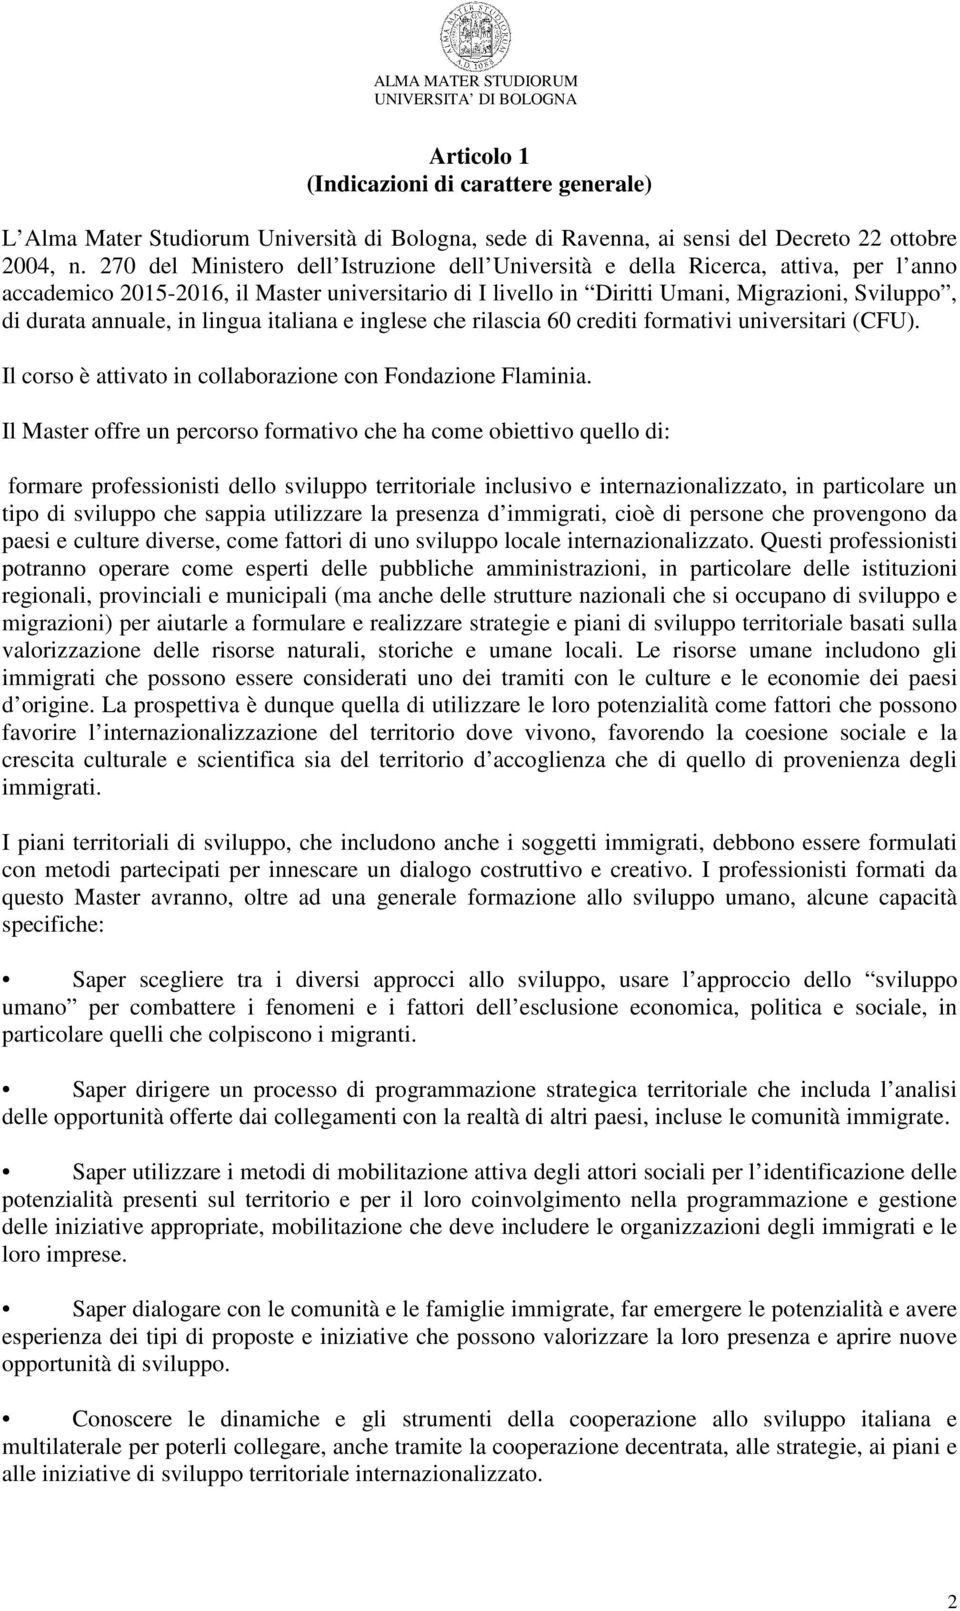 annuale, in lingua italiana e inglese che rilascia 60 crediti formativi universitari (CFU). Il corso è attivato in collaborazione con Fondazione Flaminia.